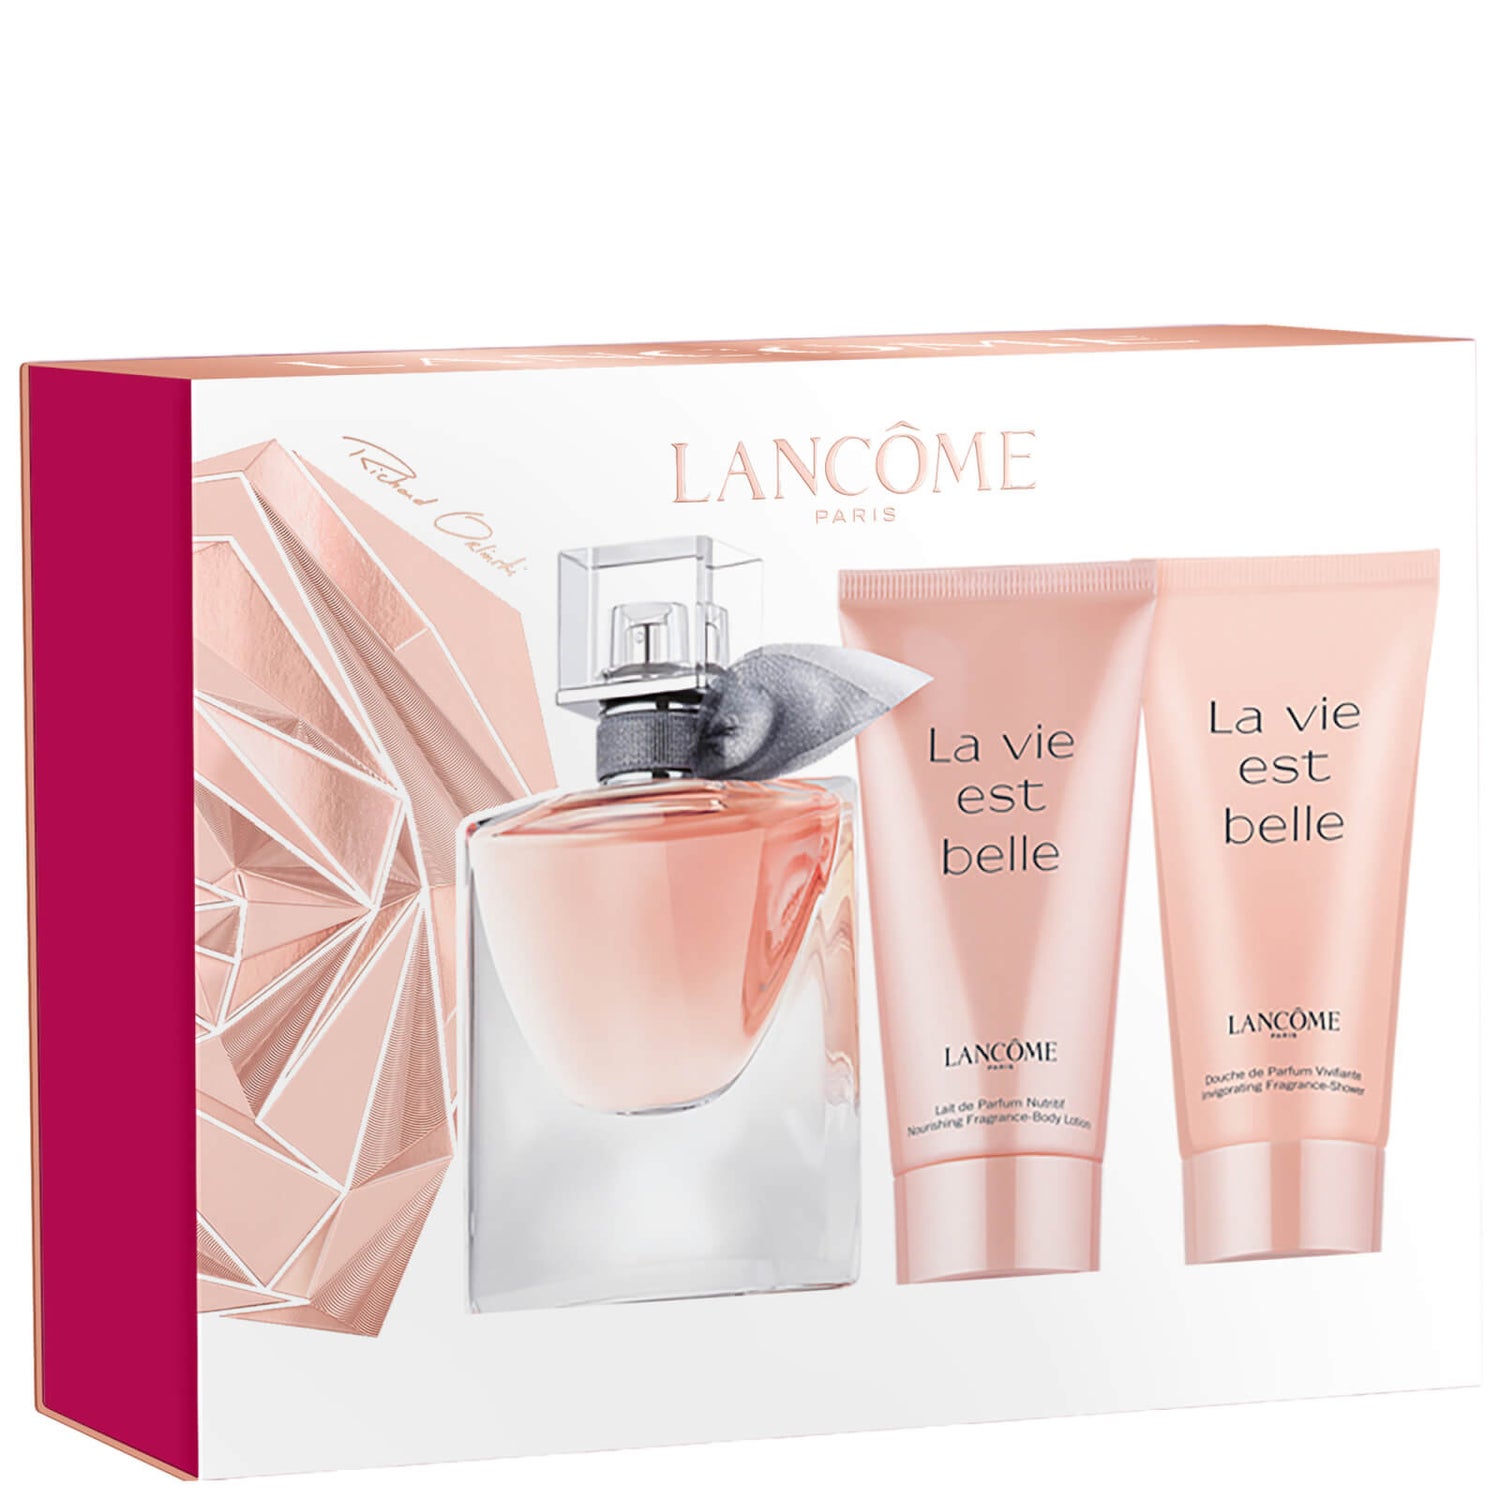 Lancôme La Vie Est Belle Eau De Parfum 30ml Holiday Gift Set For Her (Worth £80.00)